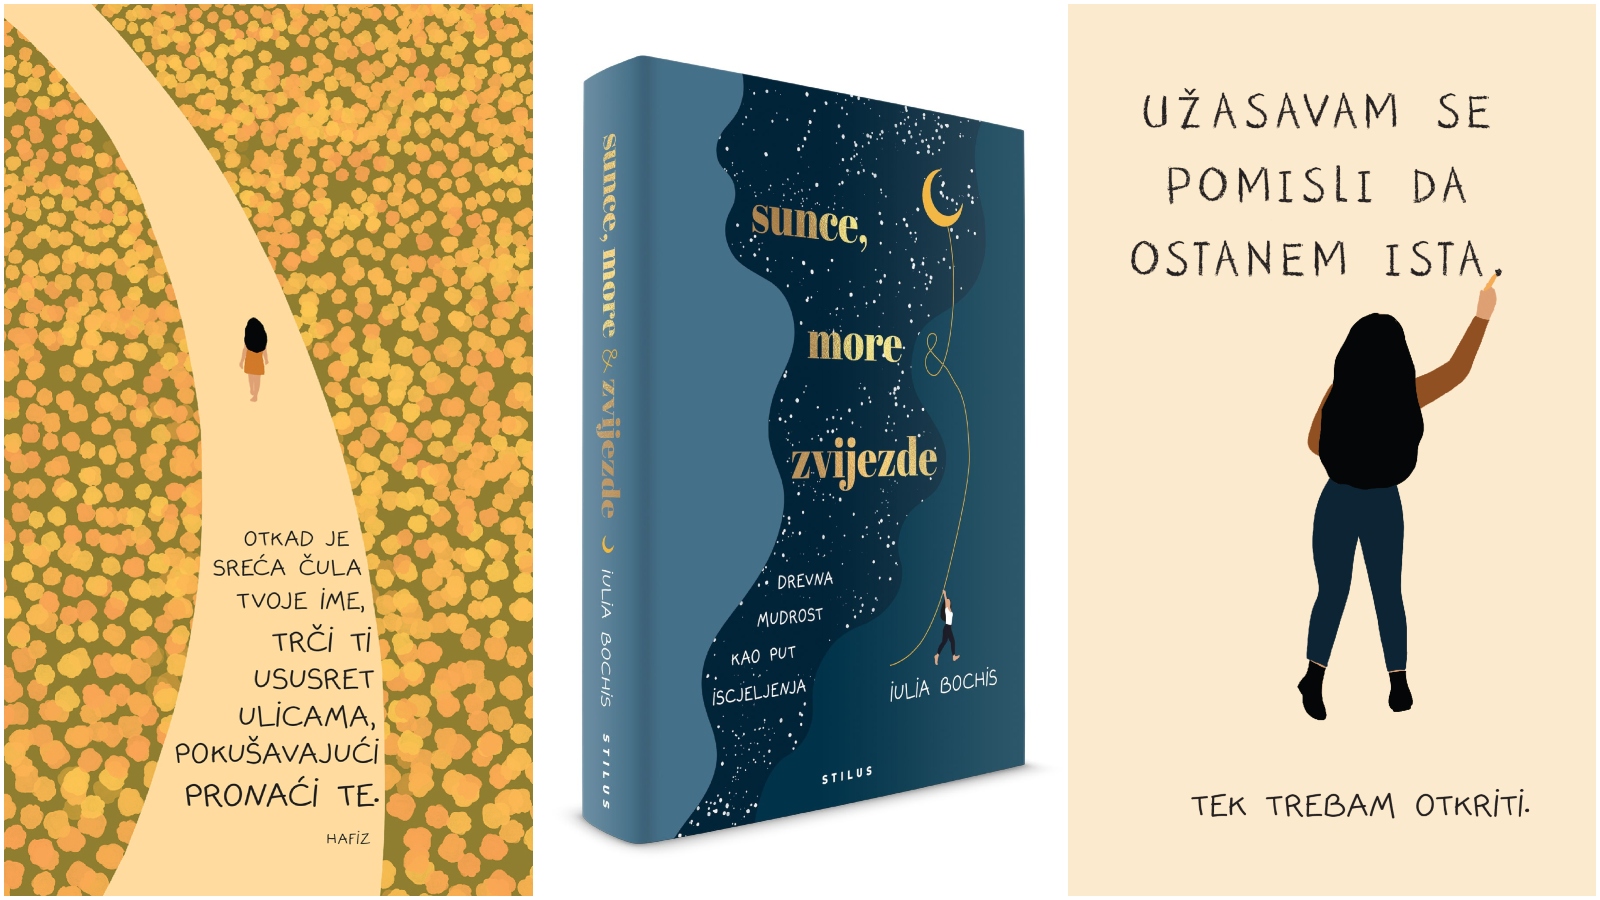 Sunce, more i zvijezde: Knjiga mjeseca siječnja osvaja prekrasnim ilustracijama